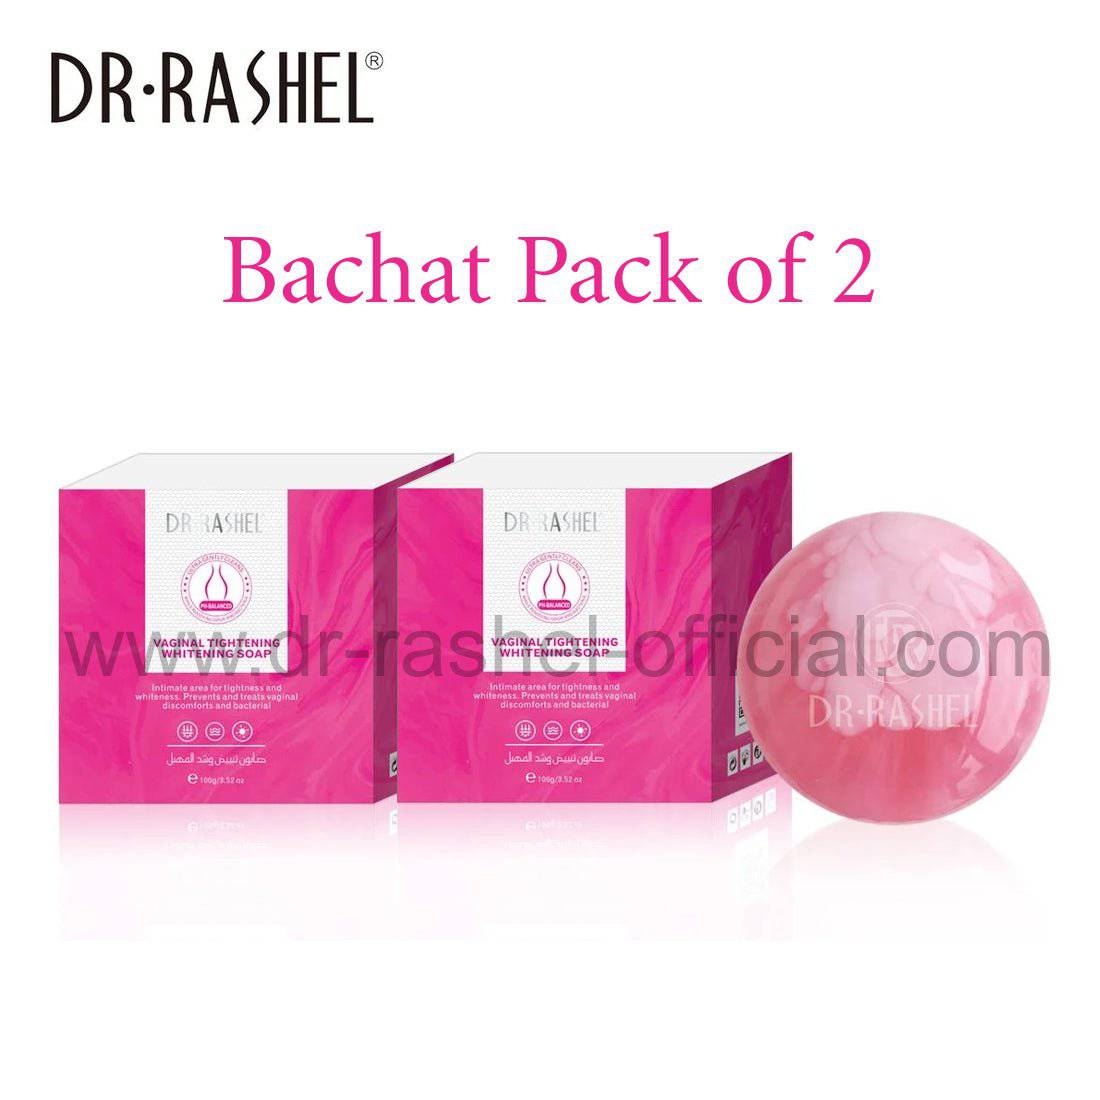 Dr.Rashel Feminine Vaginal Tightening Whitening Soap for Girls & Women - 100gms - Pack Of 2 - Dr-Rashel-Official